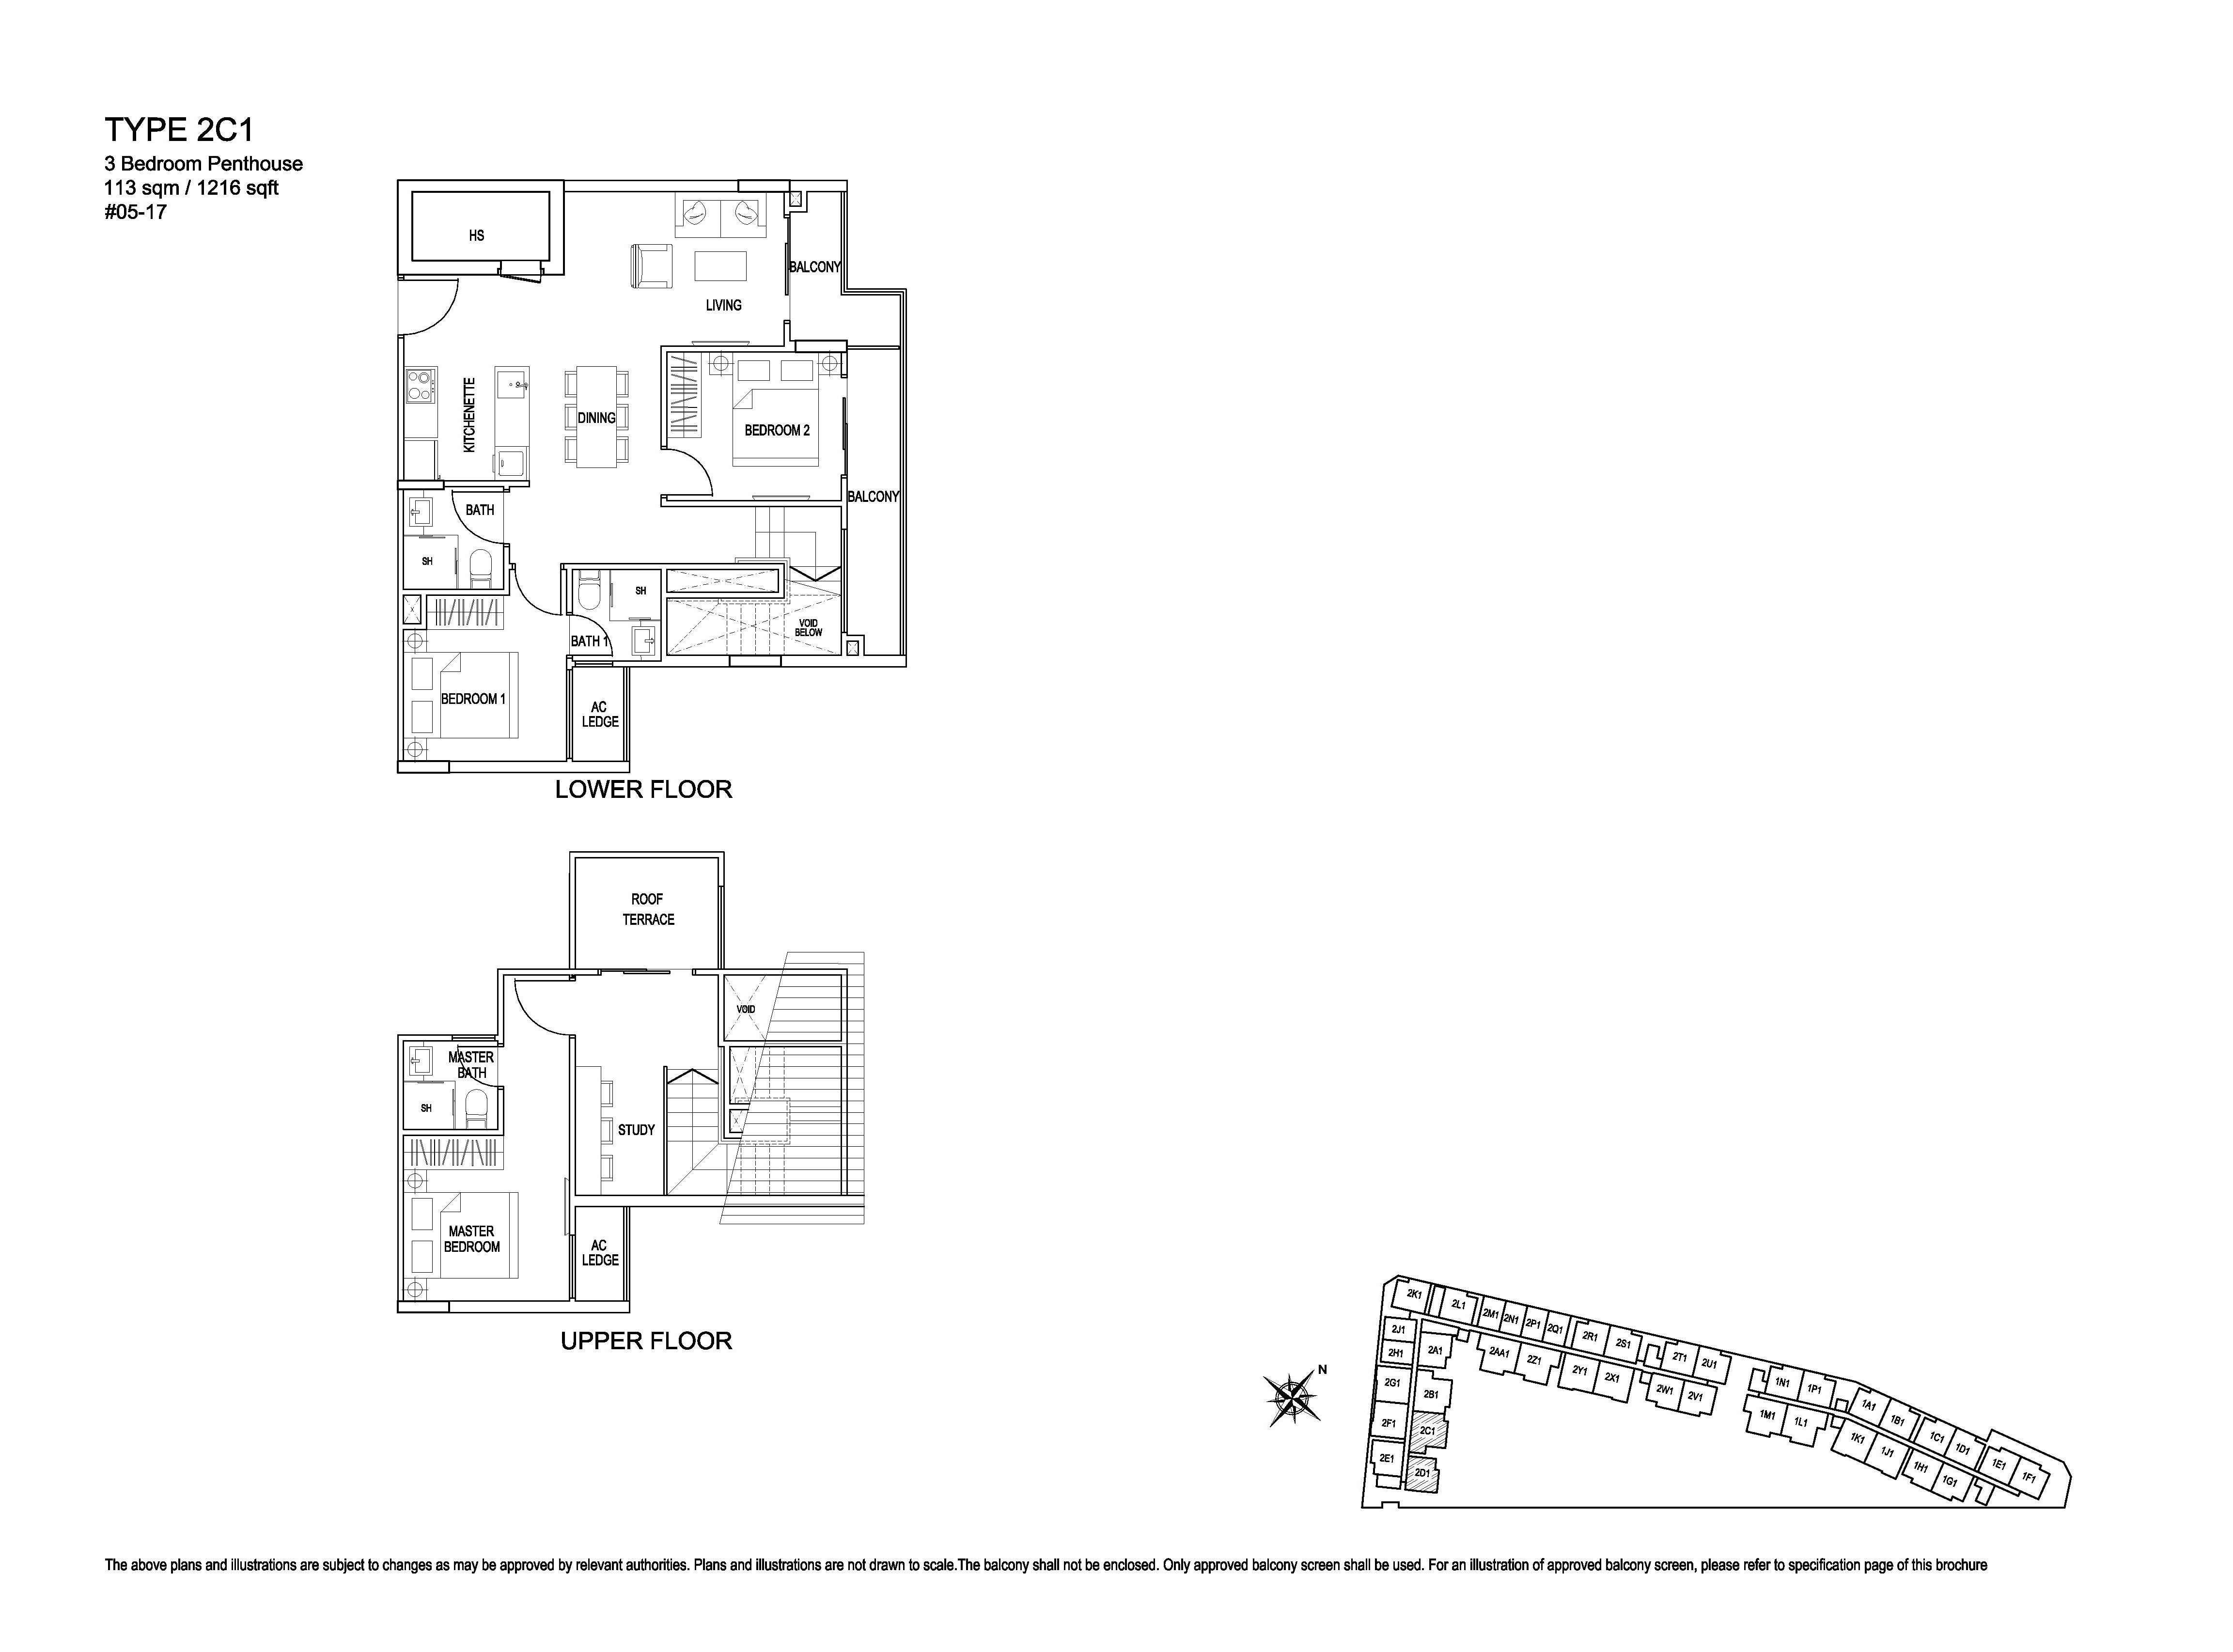 Kensington Square 3 Bedroom Penthouse Floor Plans Type 2C1